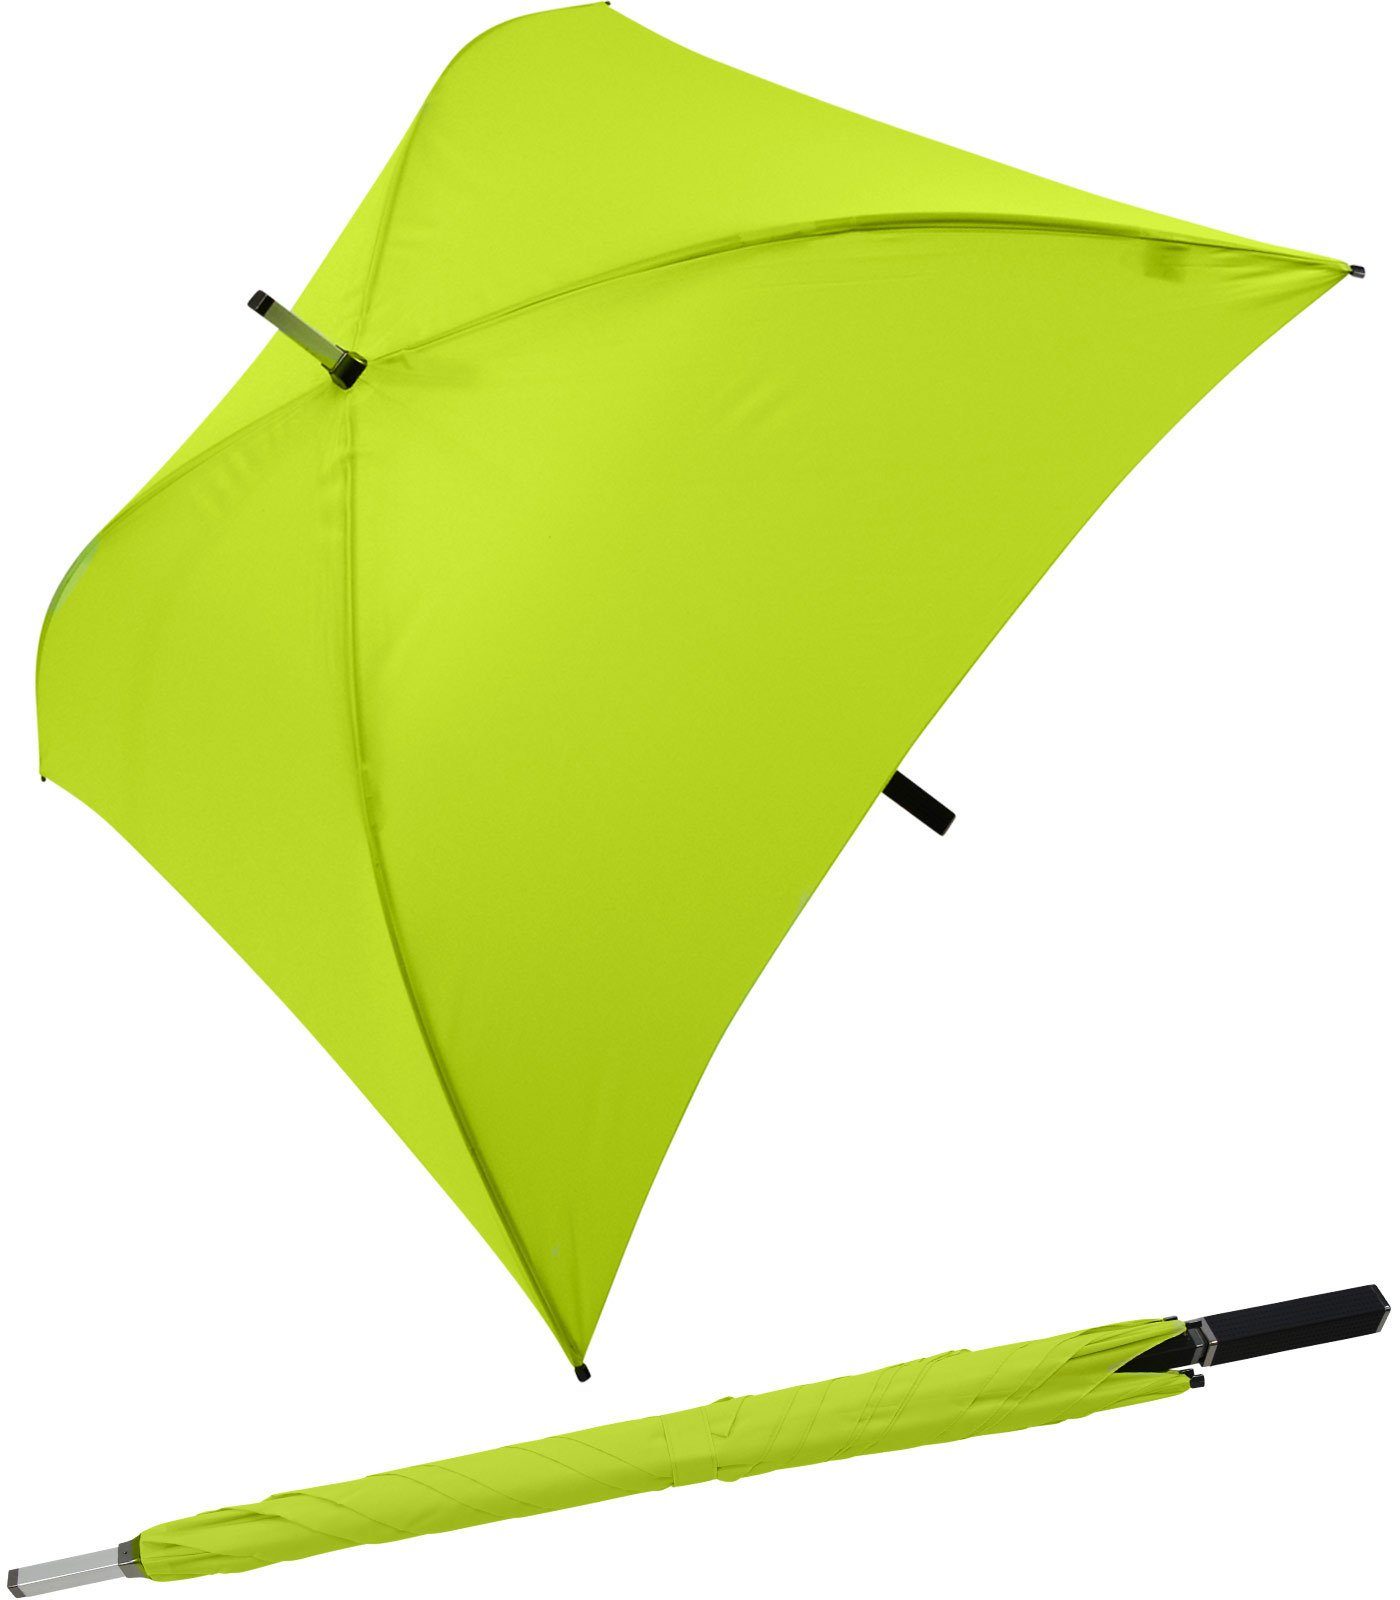 Regenschirm ganz hellgrün besondere Impliva Langregenschirm Square® quadratischer voll Regenschirm, der All